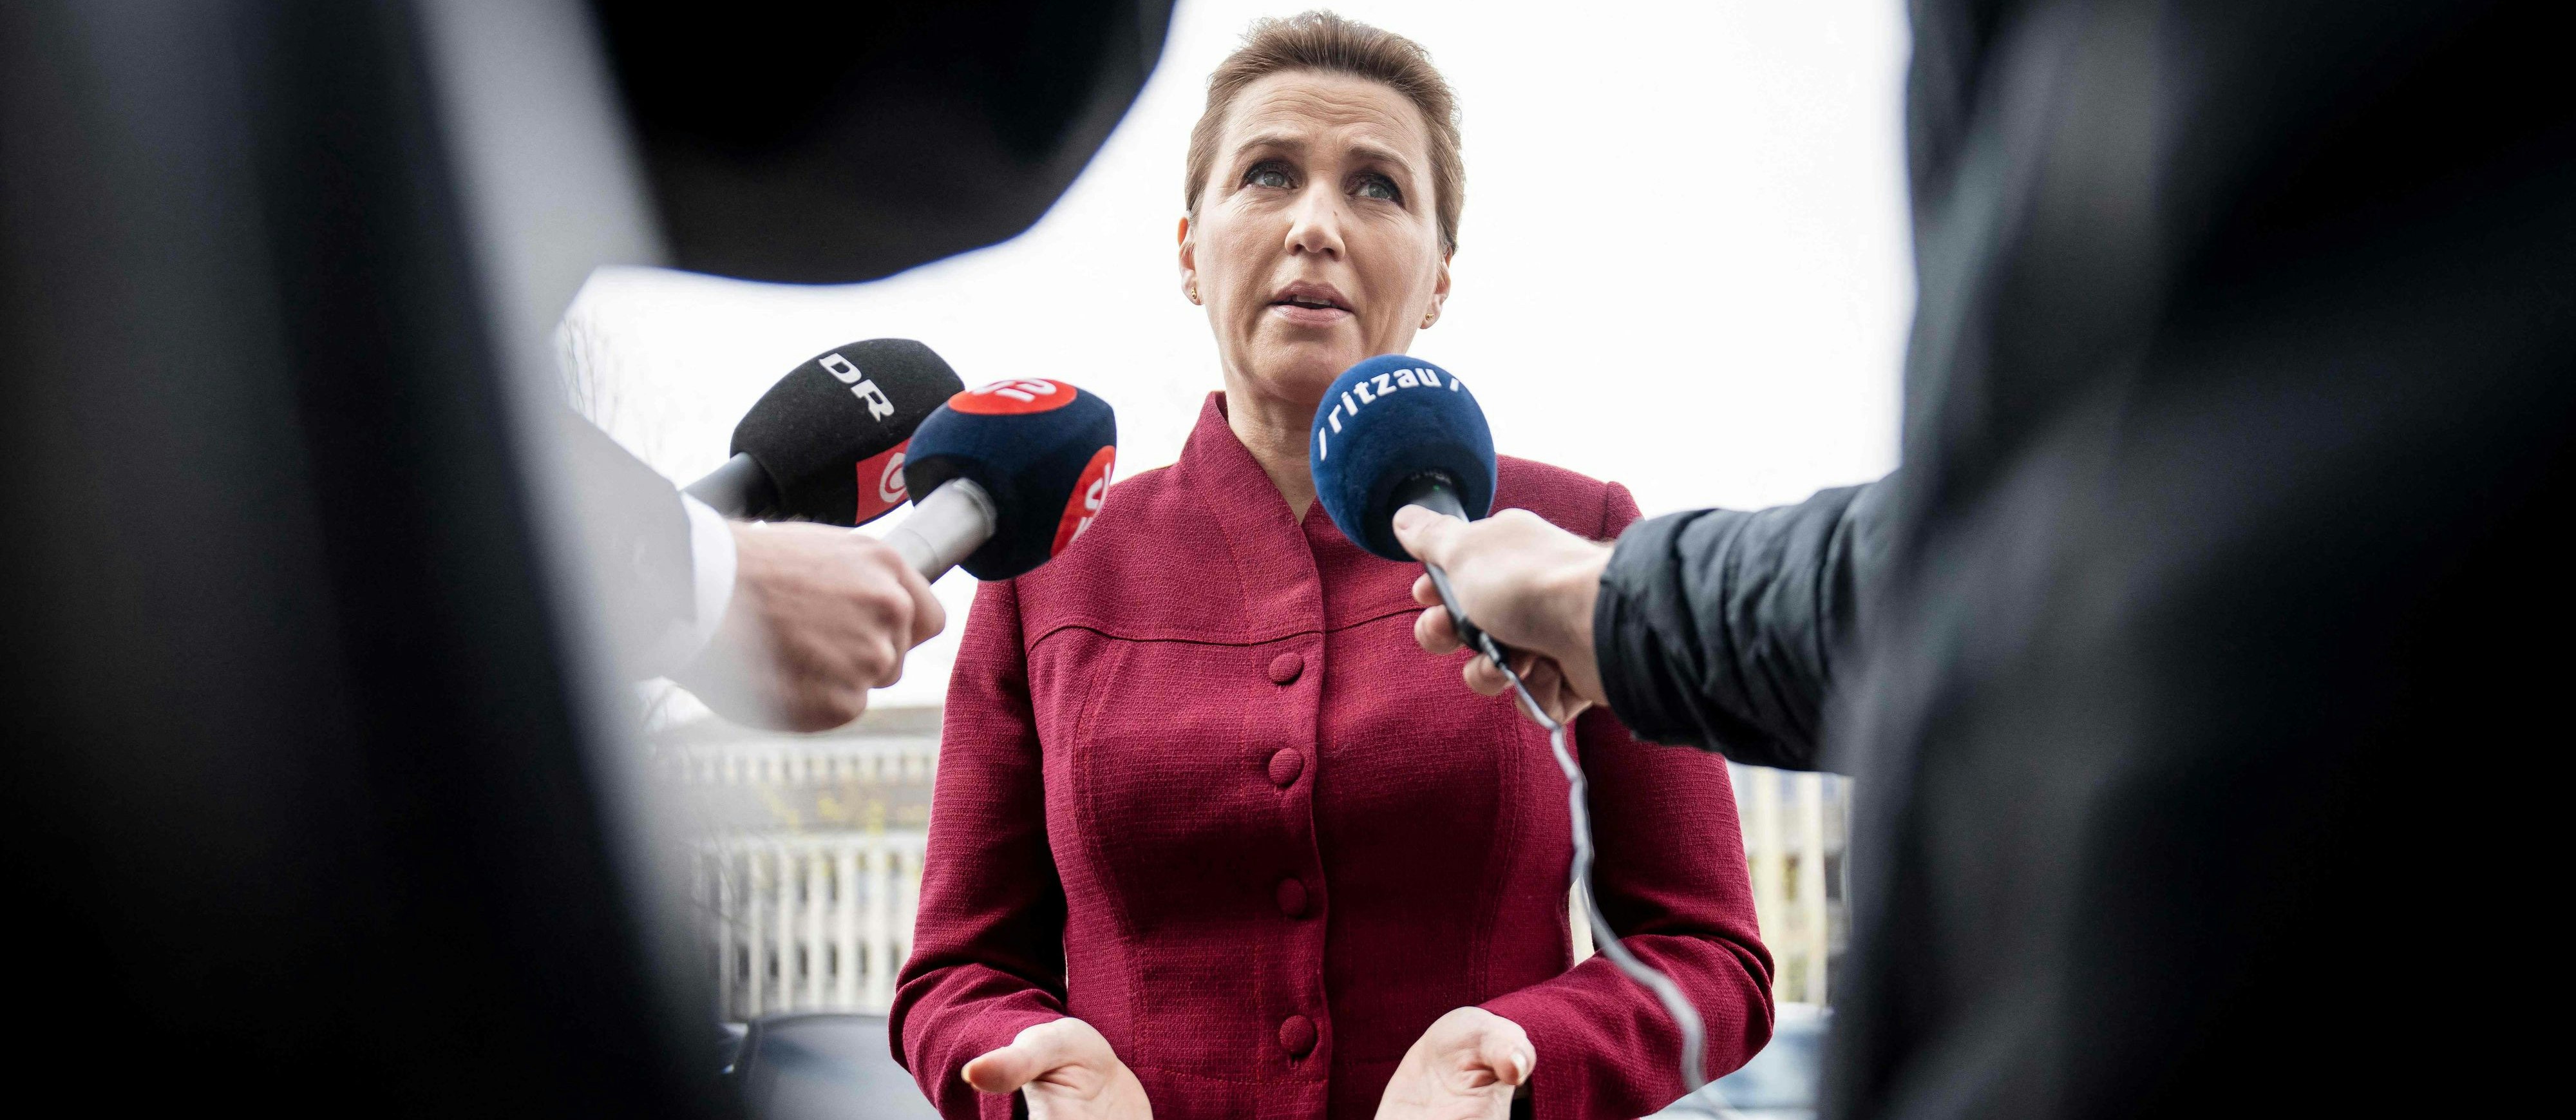 Mette Frederiksen ist seit 2019 Dänemarks Premierministerin